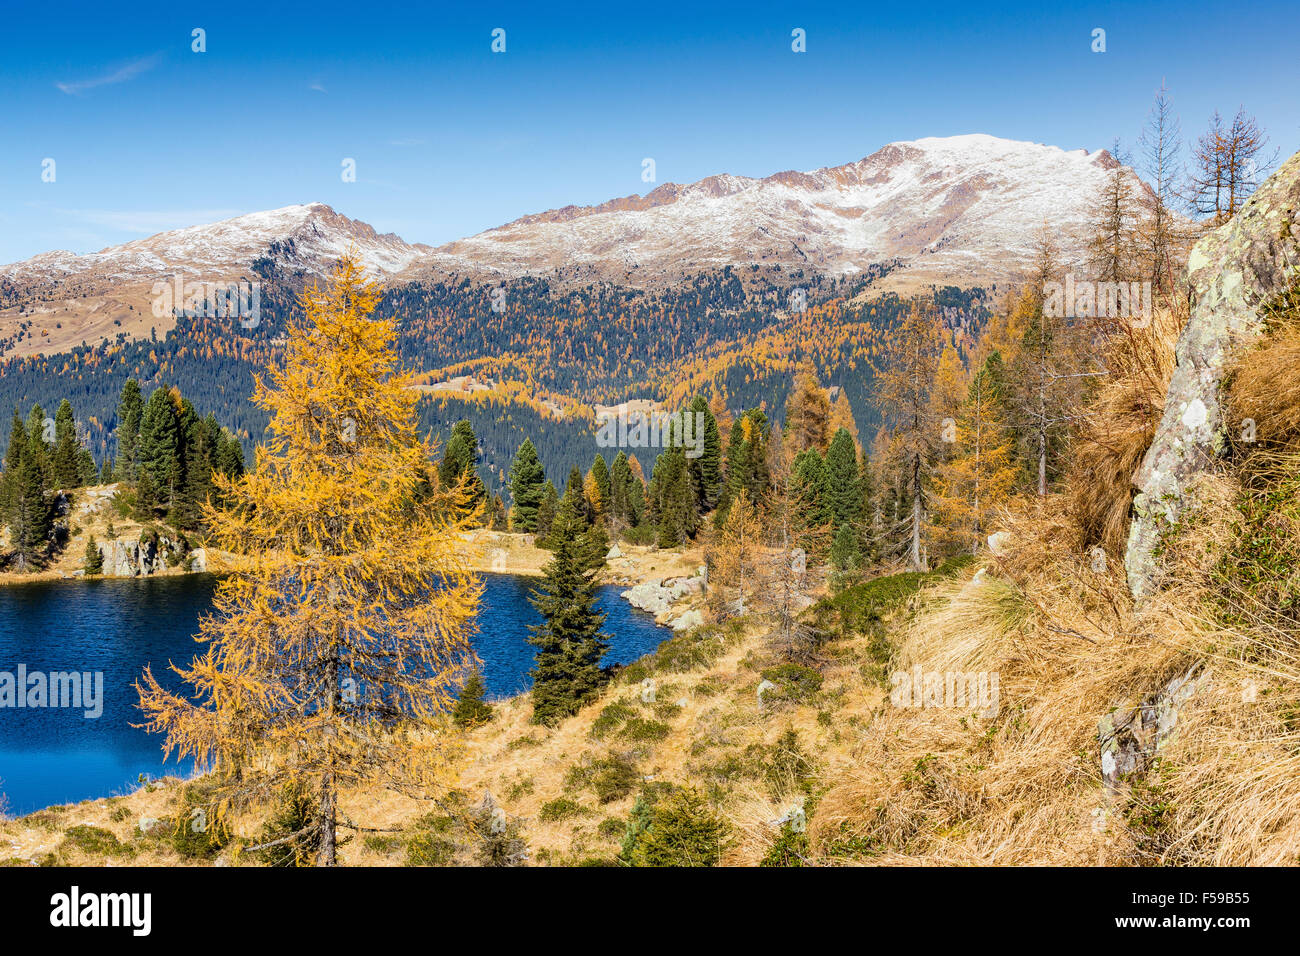 Autumn season, Colbricon Lake, The Lagorai massif. The Dolomites. Paneveggio-Pale di San Martino Nature Park. Trentino, Italian Alps. Stock Photo